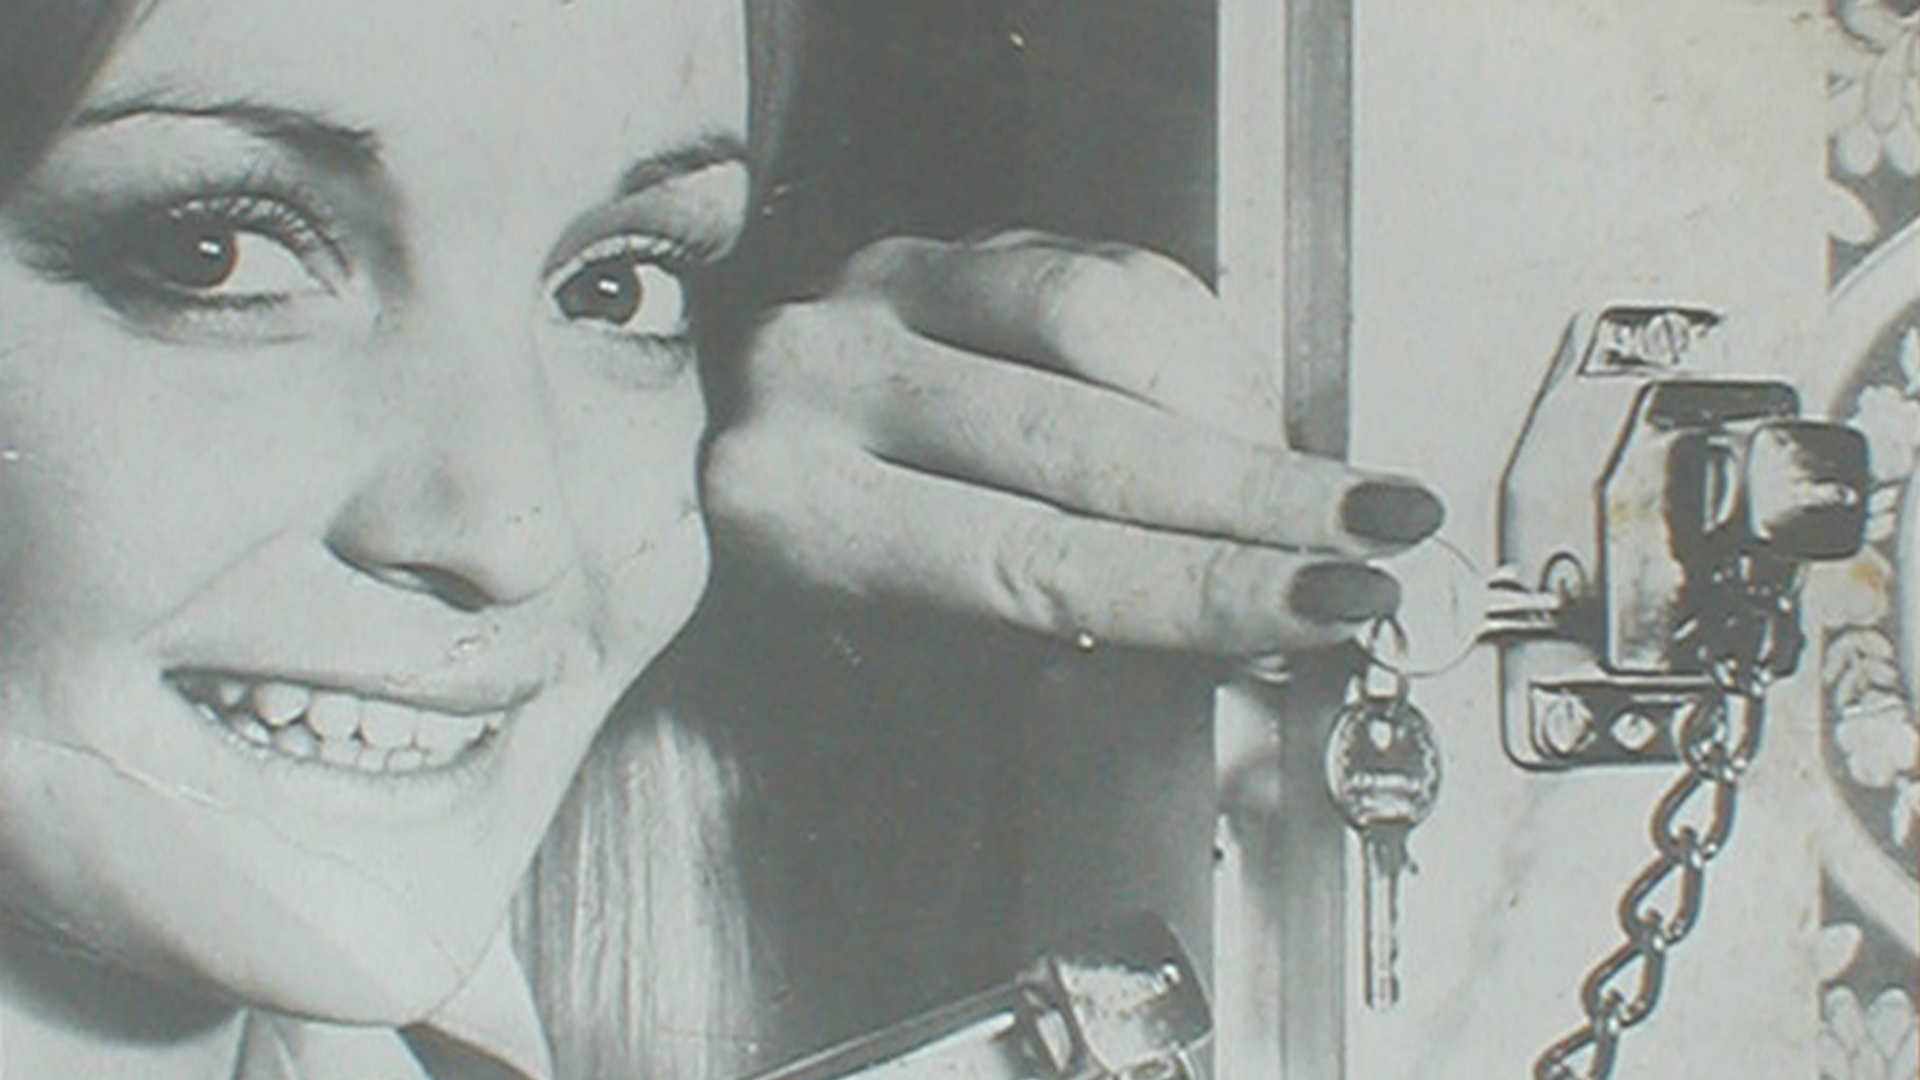 Une femme qui verrouille une serrure supplémentaire de porte © ABUS